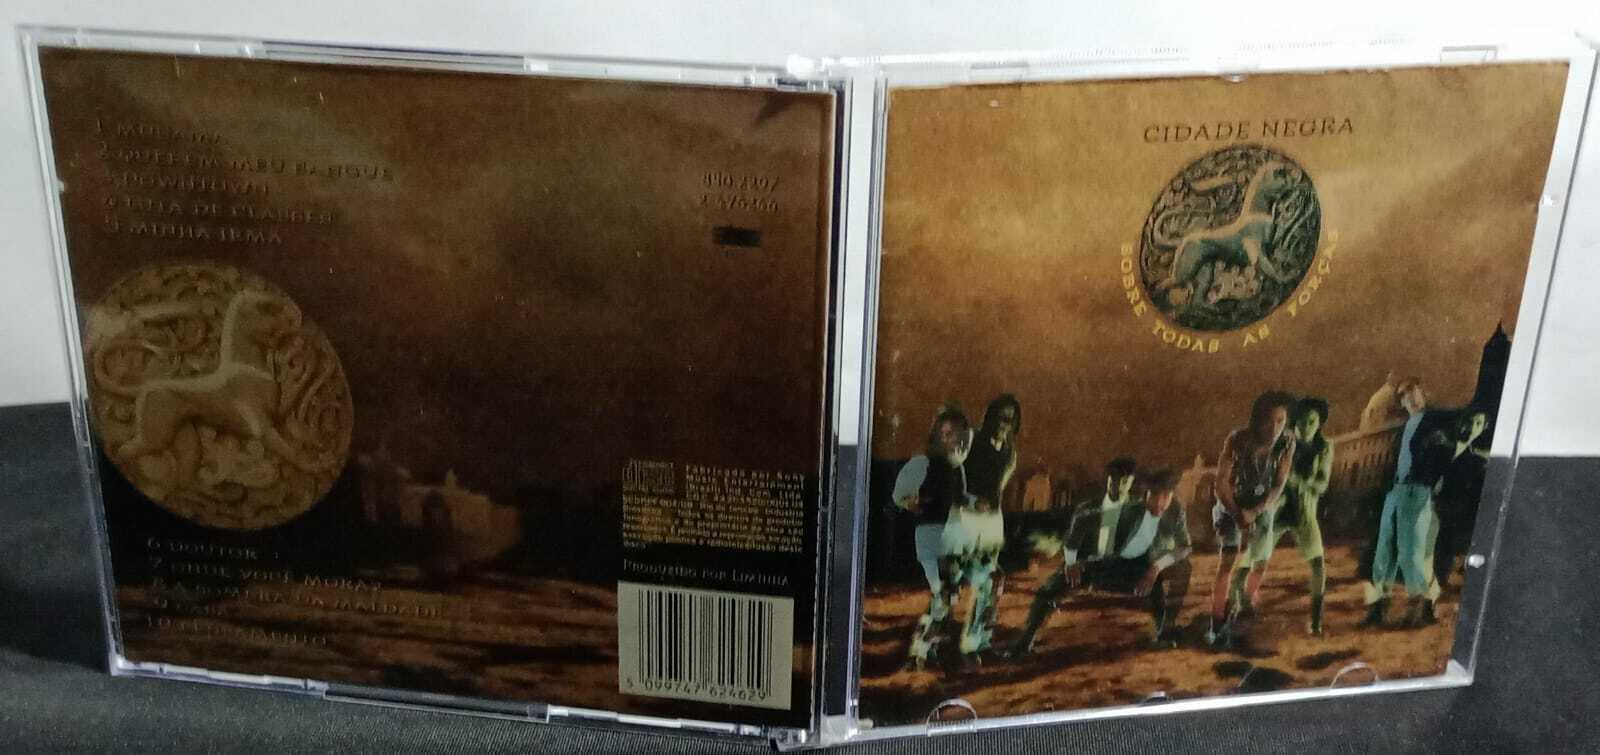 CD - Cidade Negra - Sobre Todas as Forças